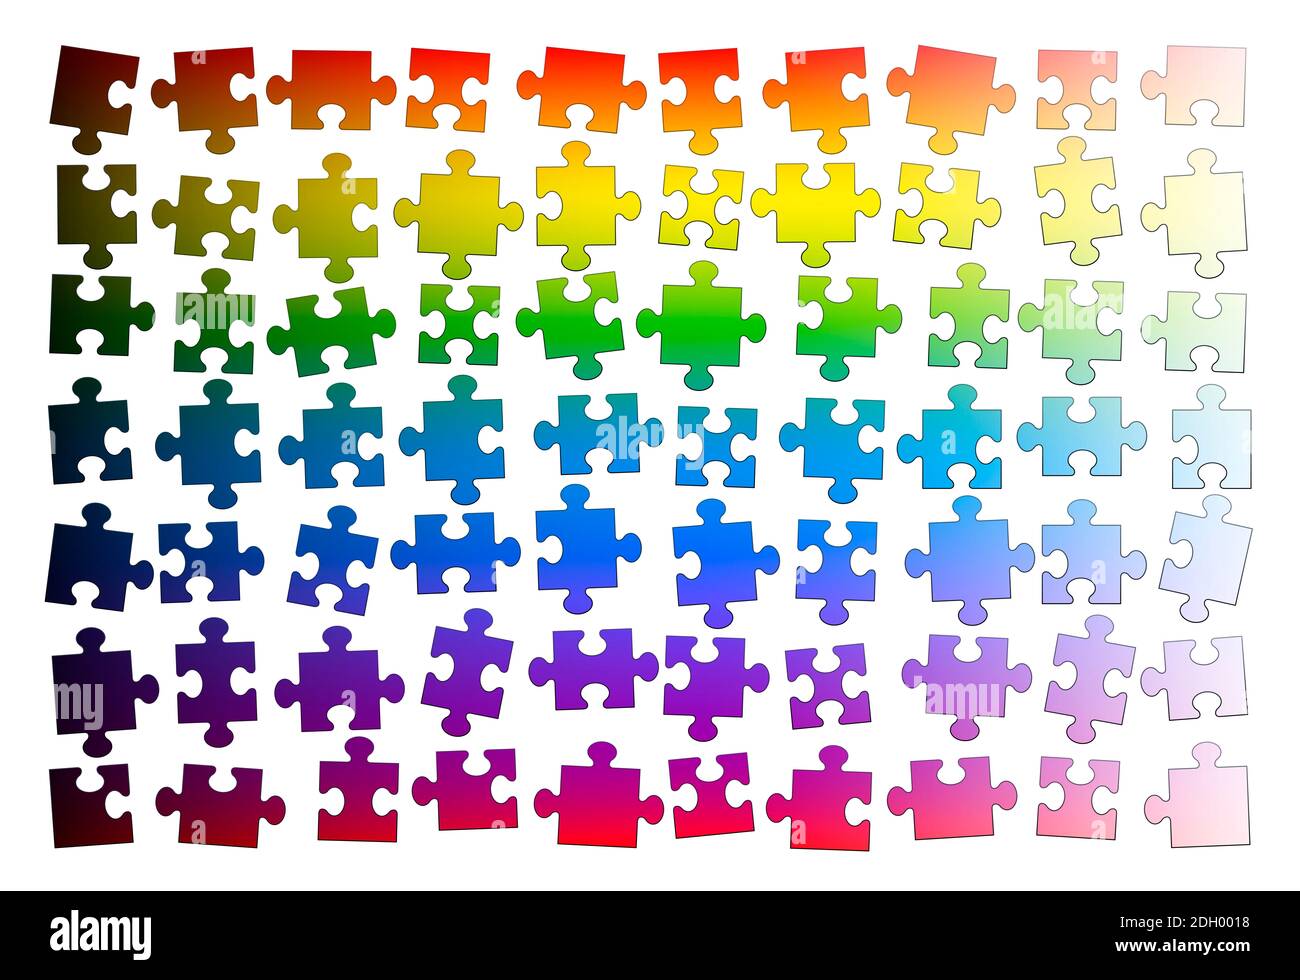 Puzzleteile. Gemischte Regenbogen Farbverlauf Puzzle-Stücke, aber noch nicht zusammen gestellt - Illustration auf weißem Hintergrund. Stockfoto